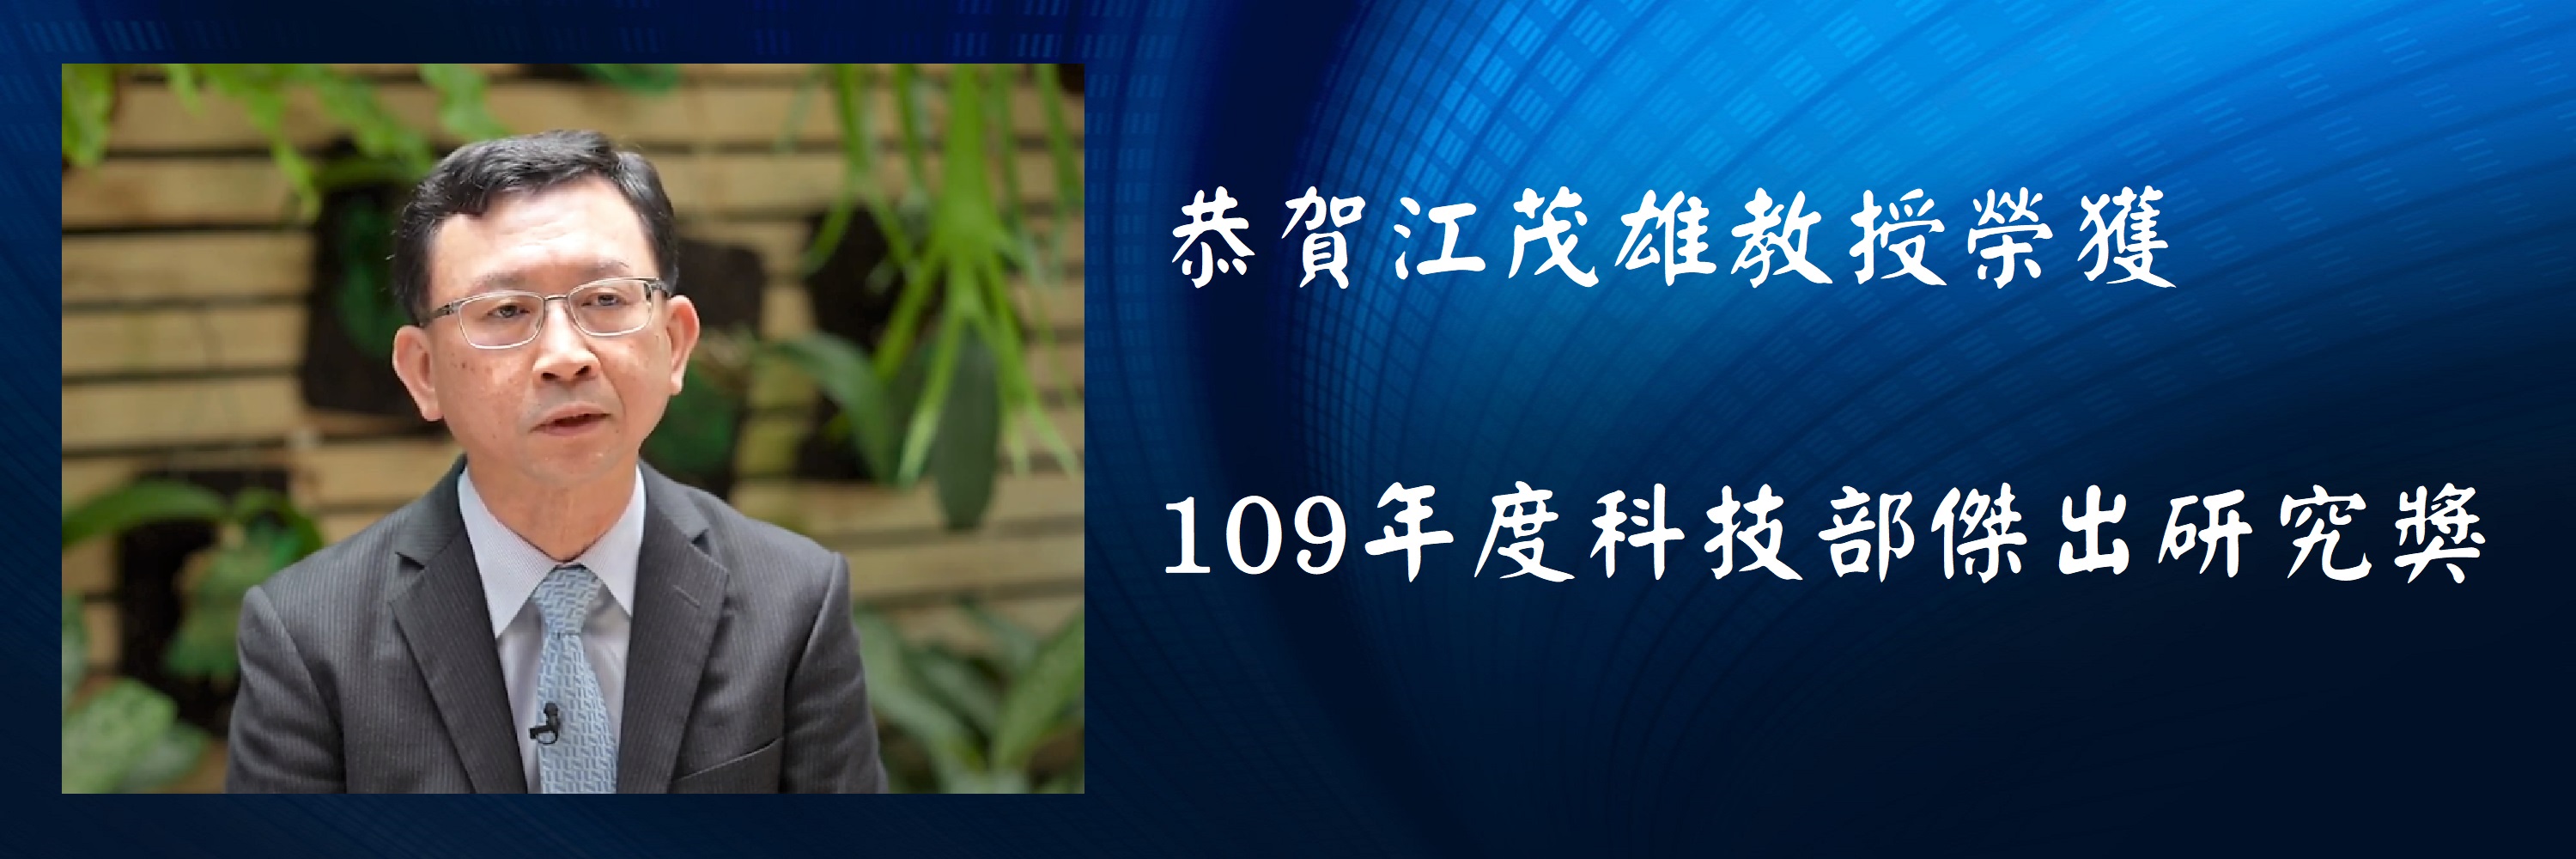 江茂雄教授榮獲109 年度科技部傑出研究獎